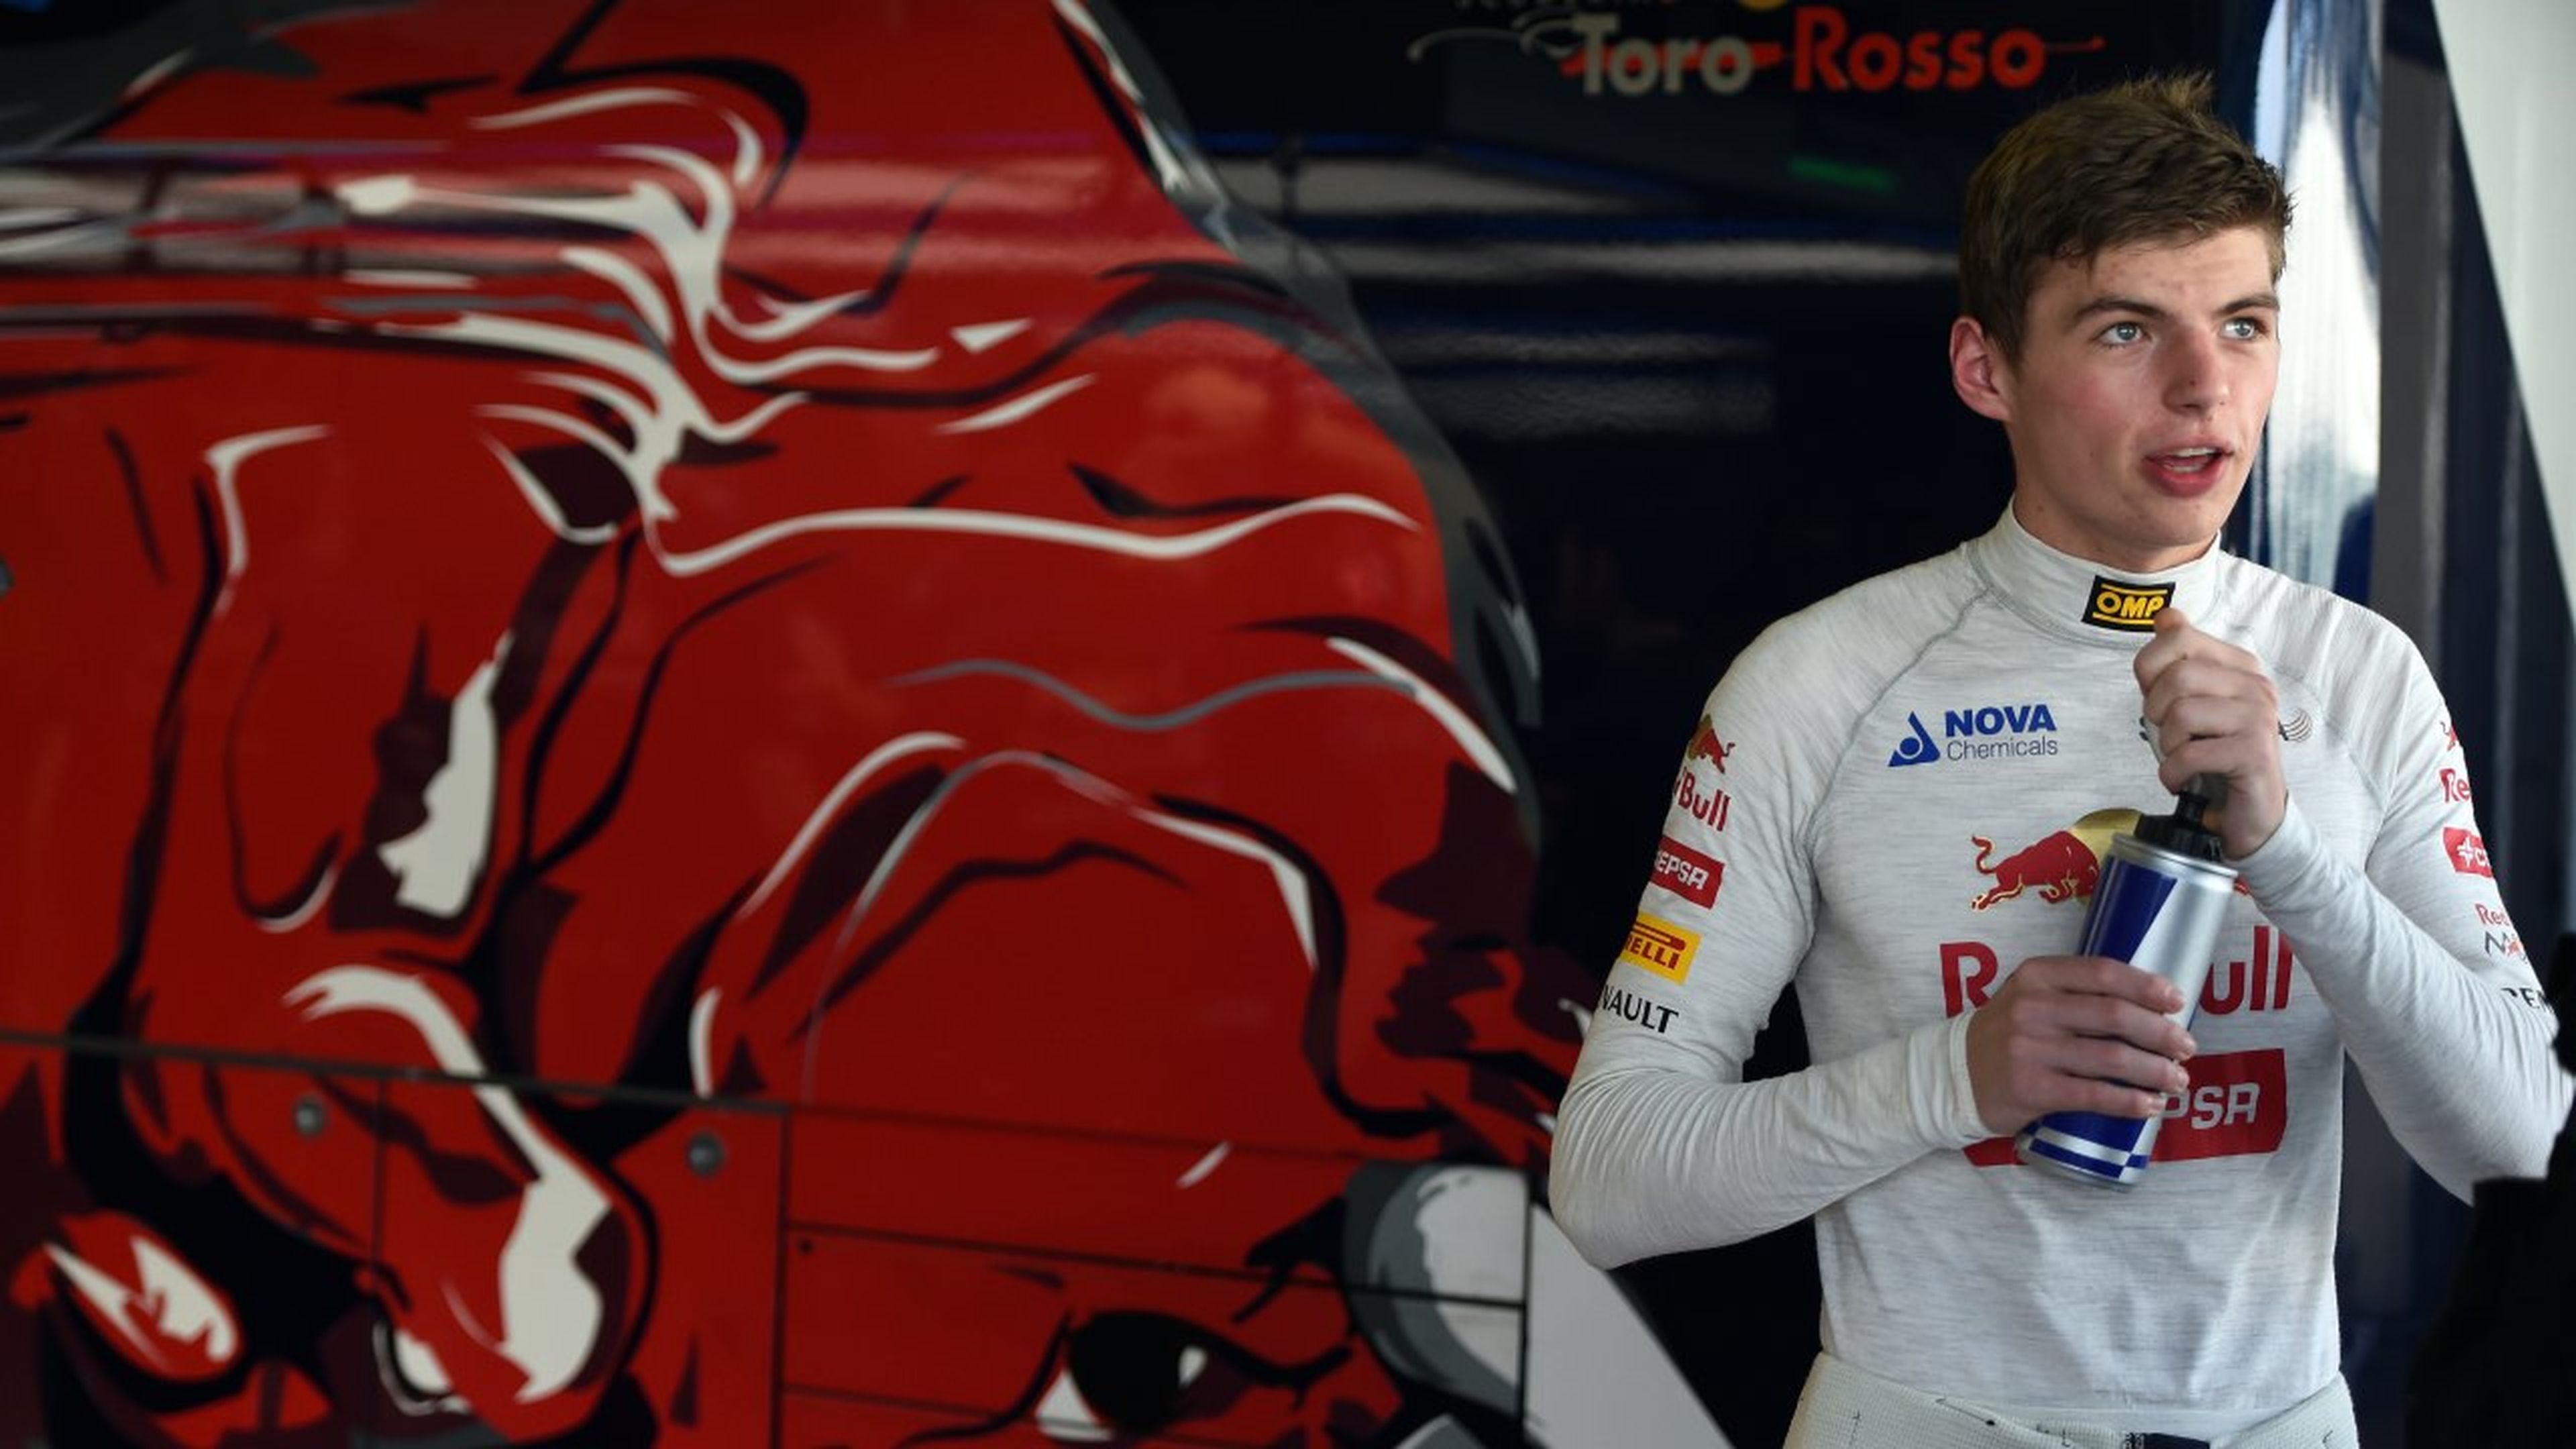 Max Verstappen en 2014 durante una jornada de pruebas con Toro Rosso